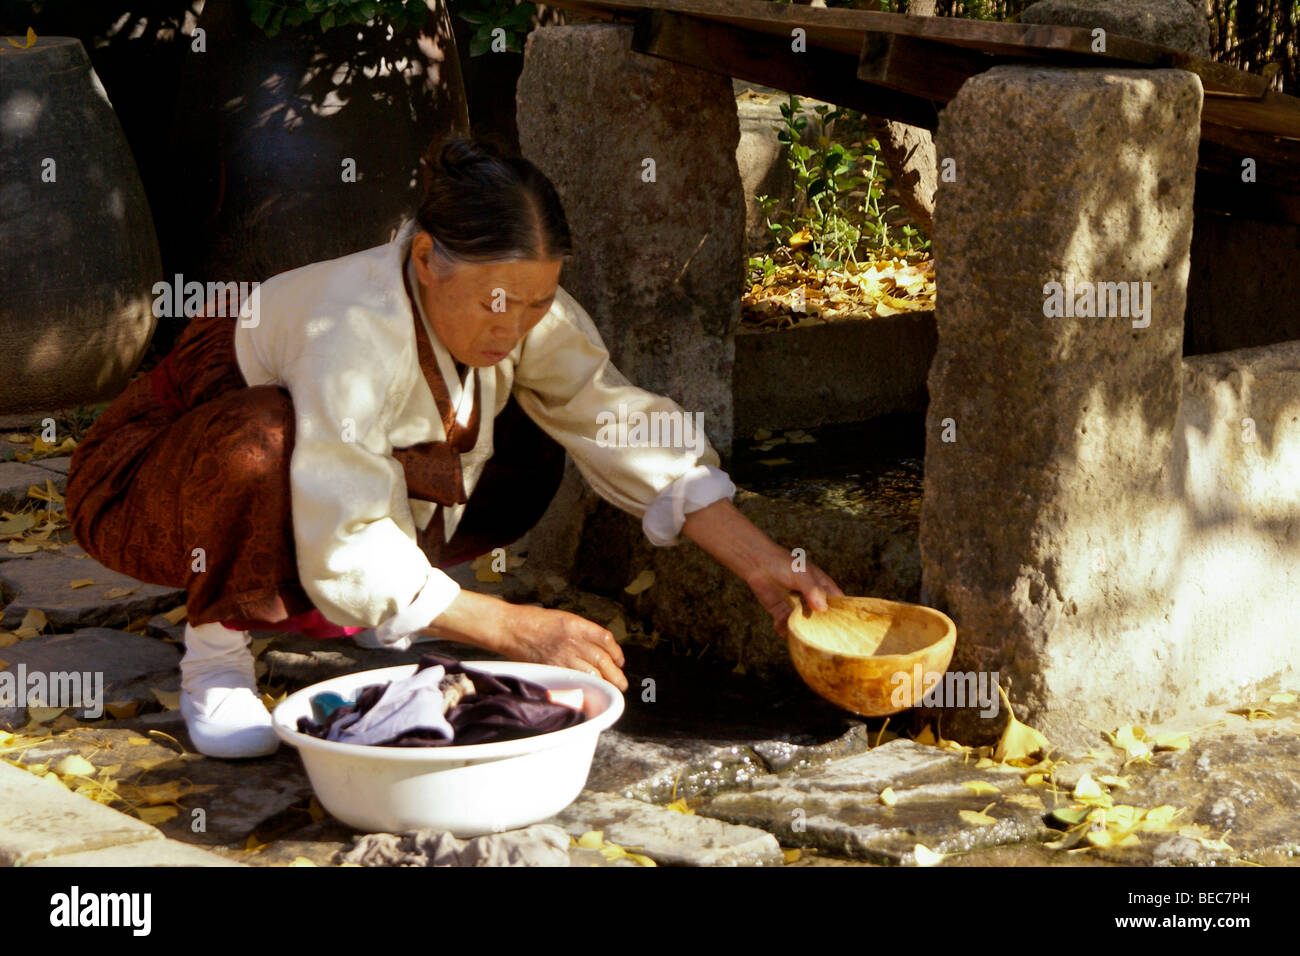 Woman washing clothes, Korean Folk Village, South Korea Stock Photo